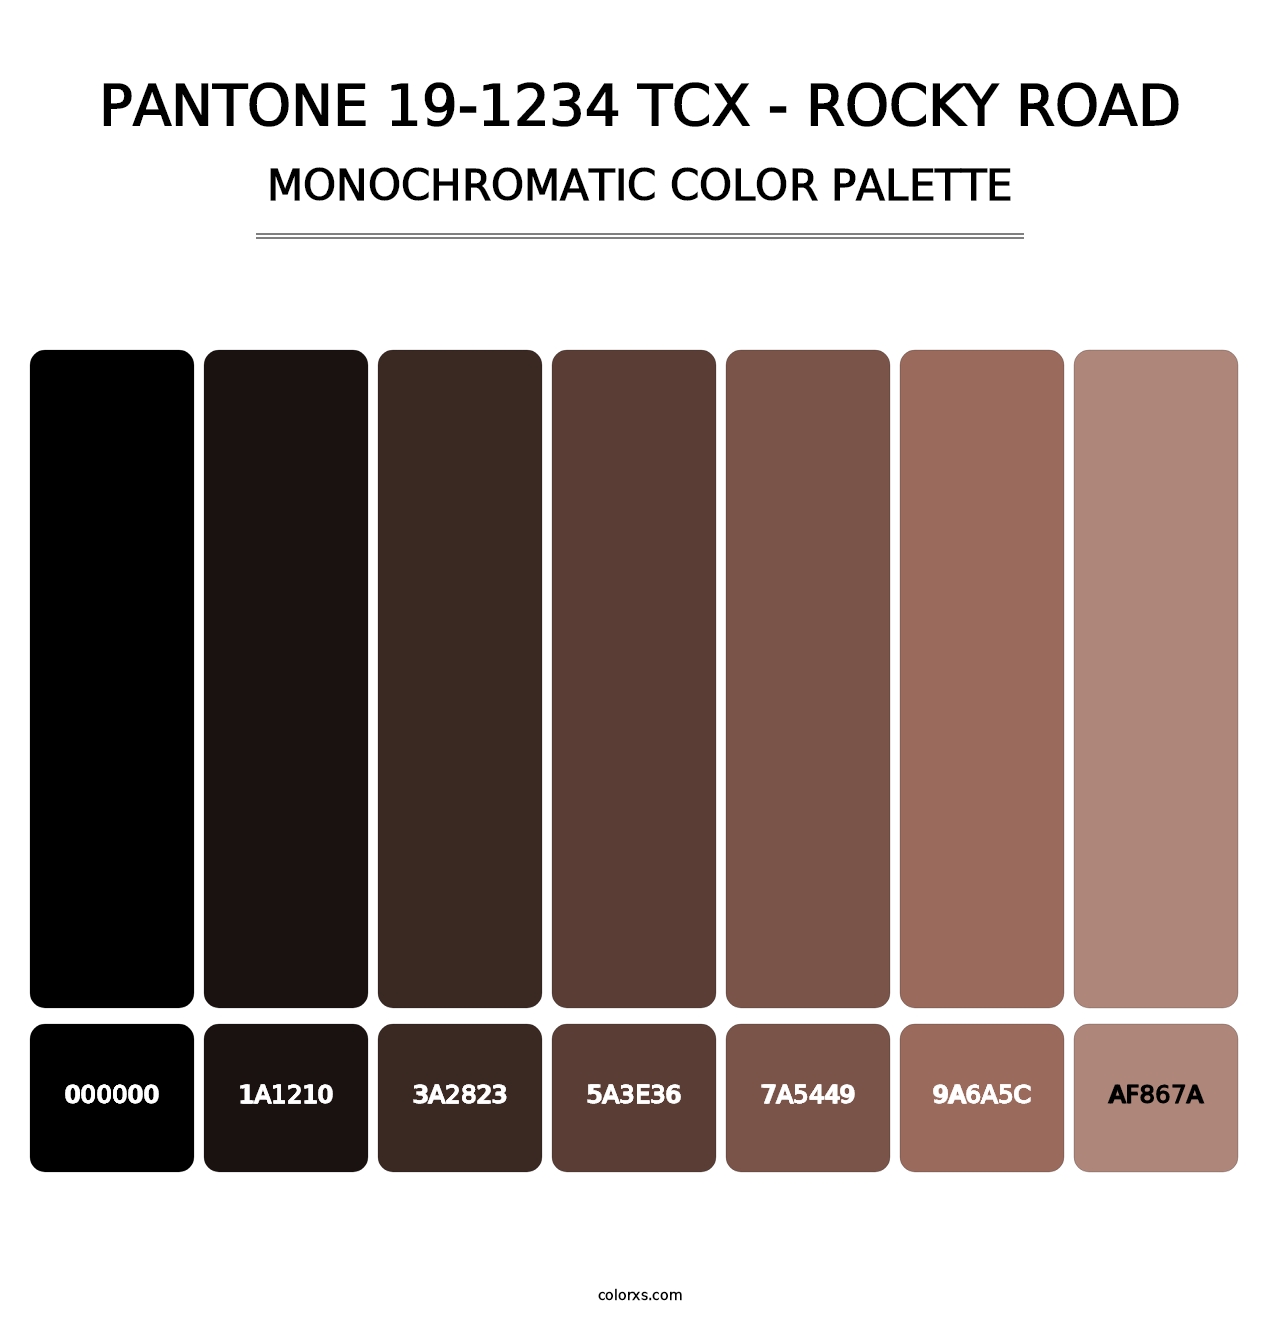 PANTONE 19-1234 TCX - Rocky Road - Monochromatic Color Palette